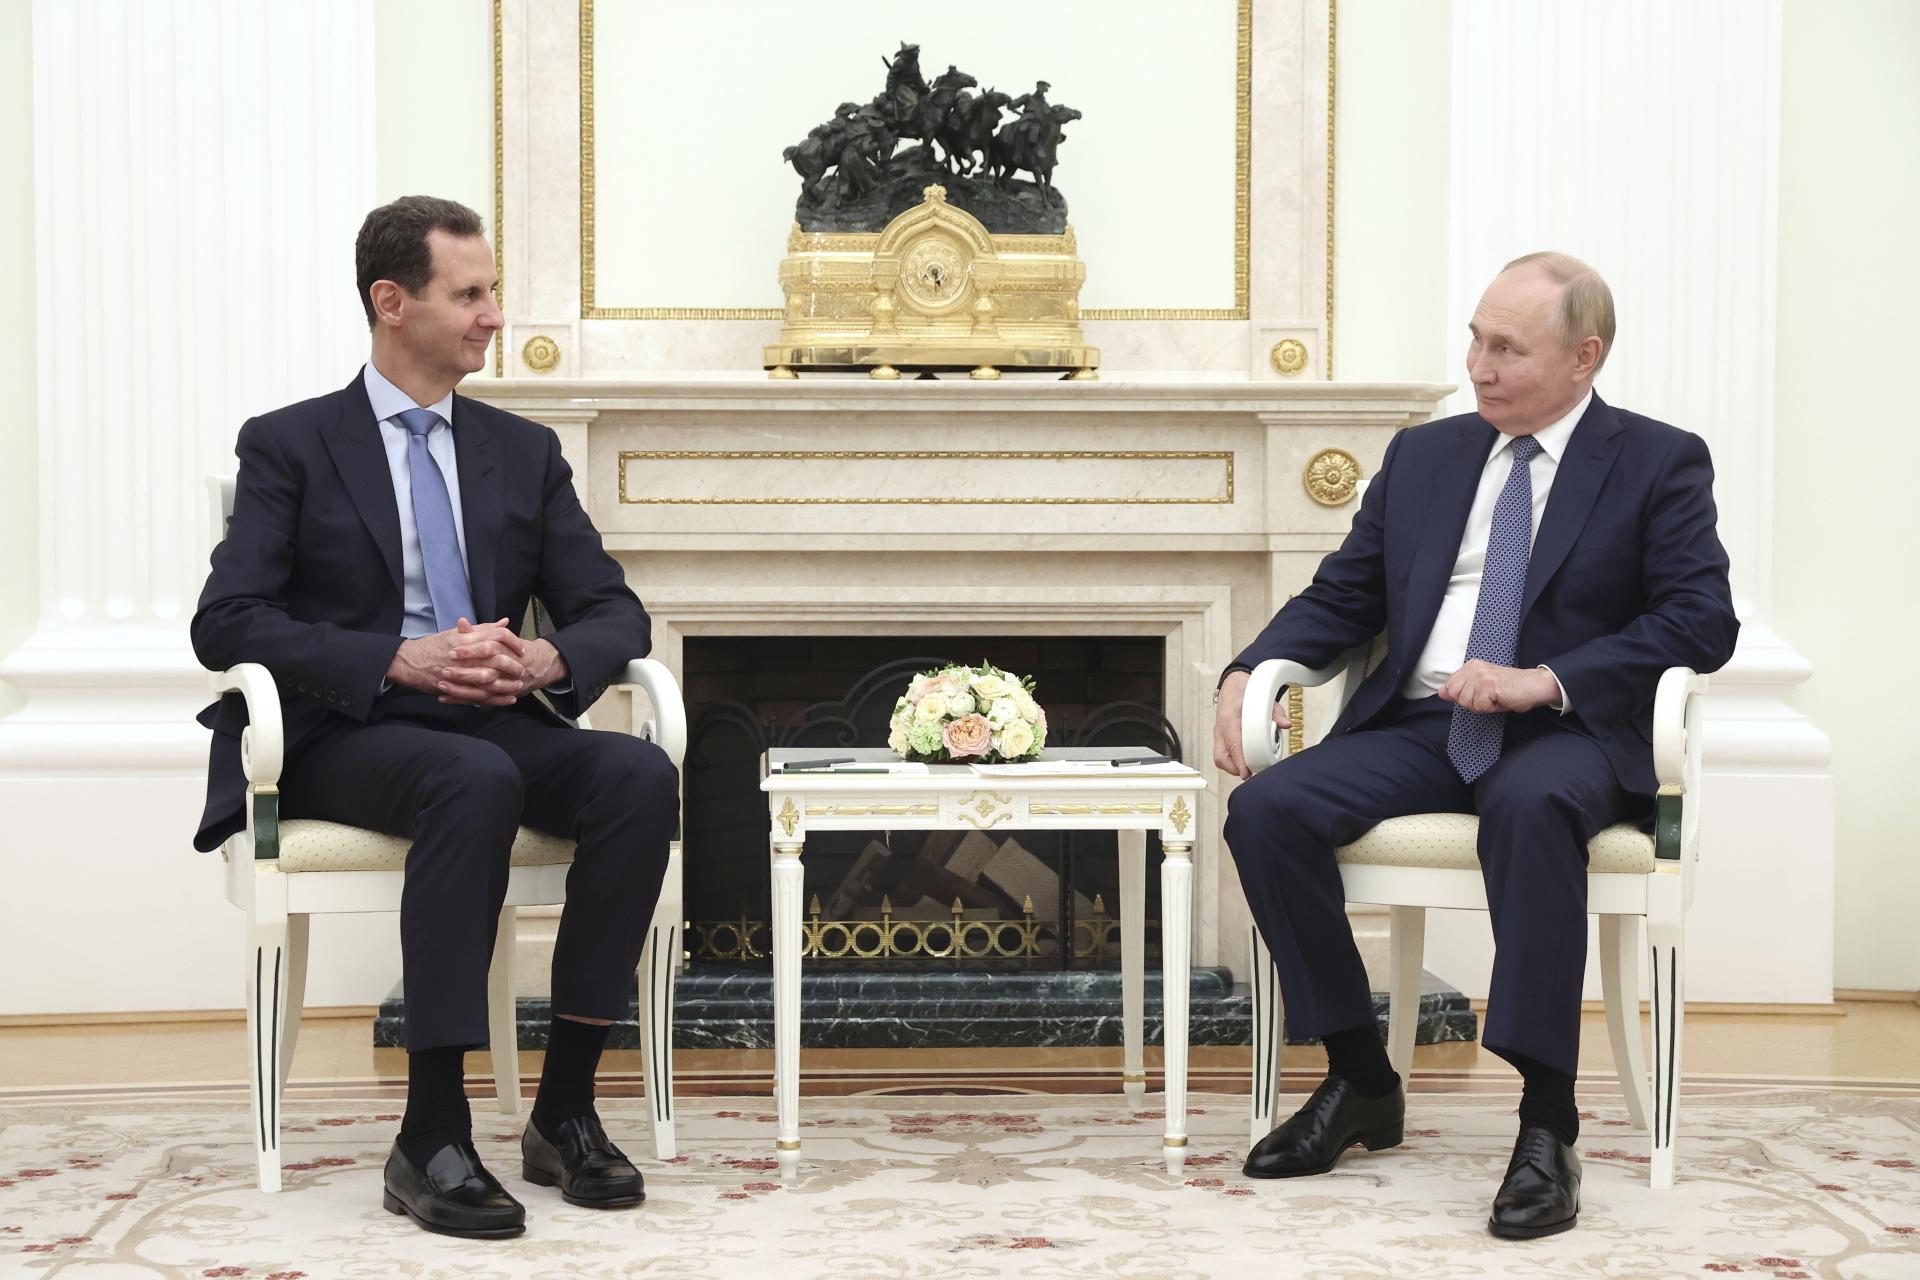 Asad sa stretol s Putinom. Medzi Sýriou a Ruskom panuje po desaťročia dôvera, povedal 